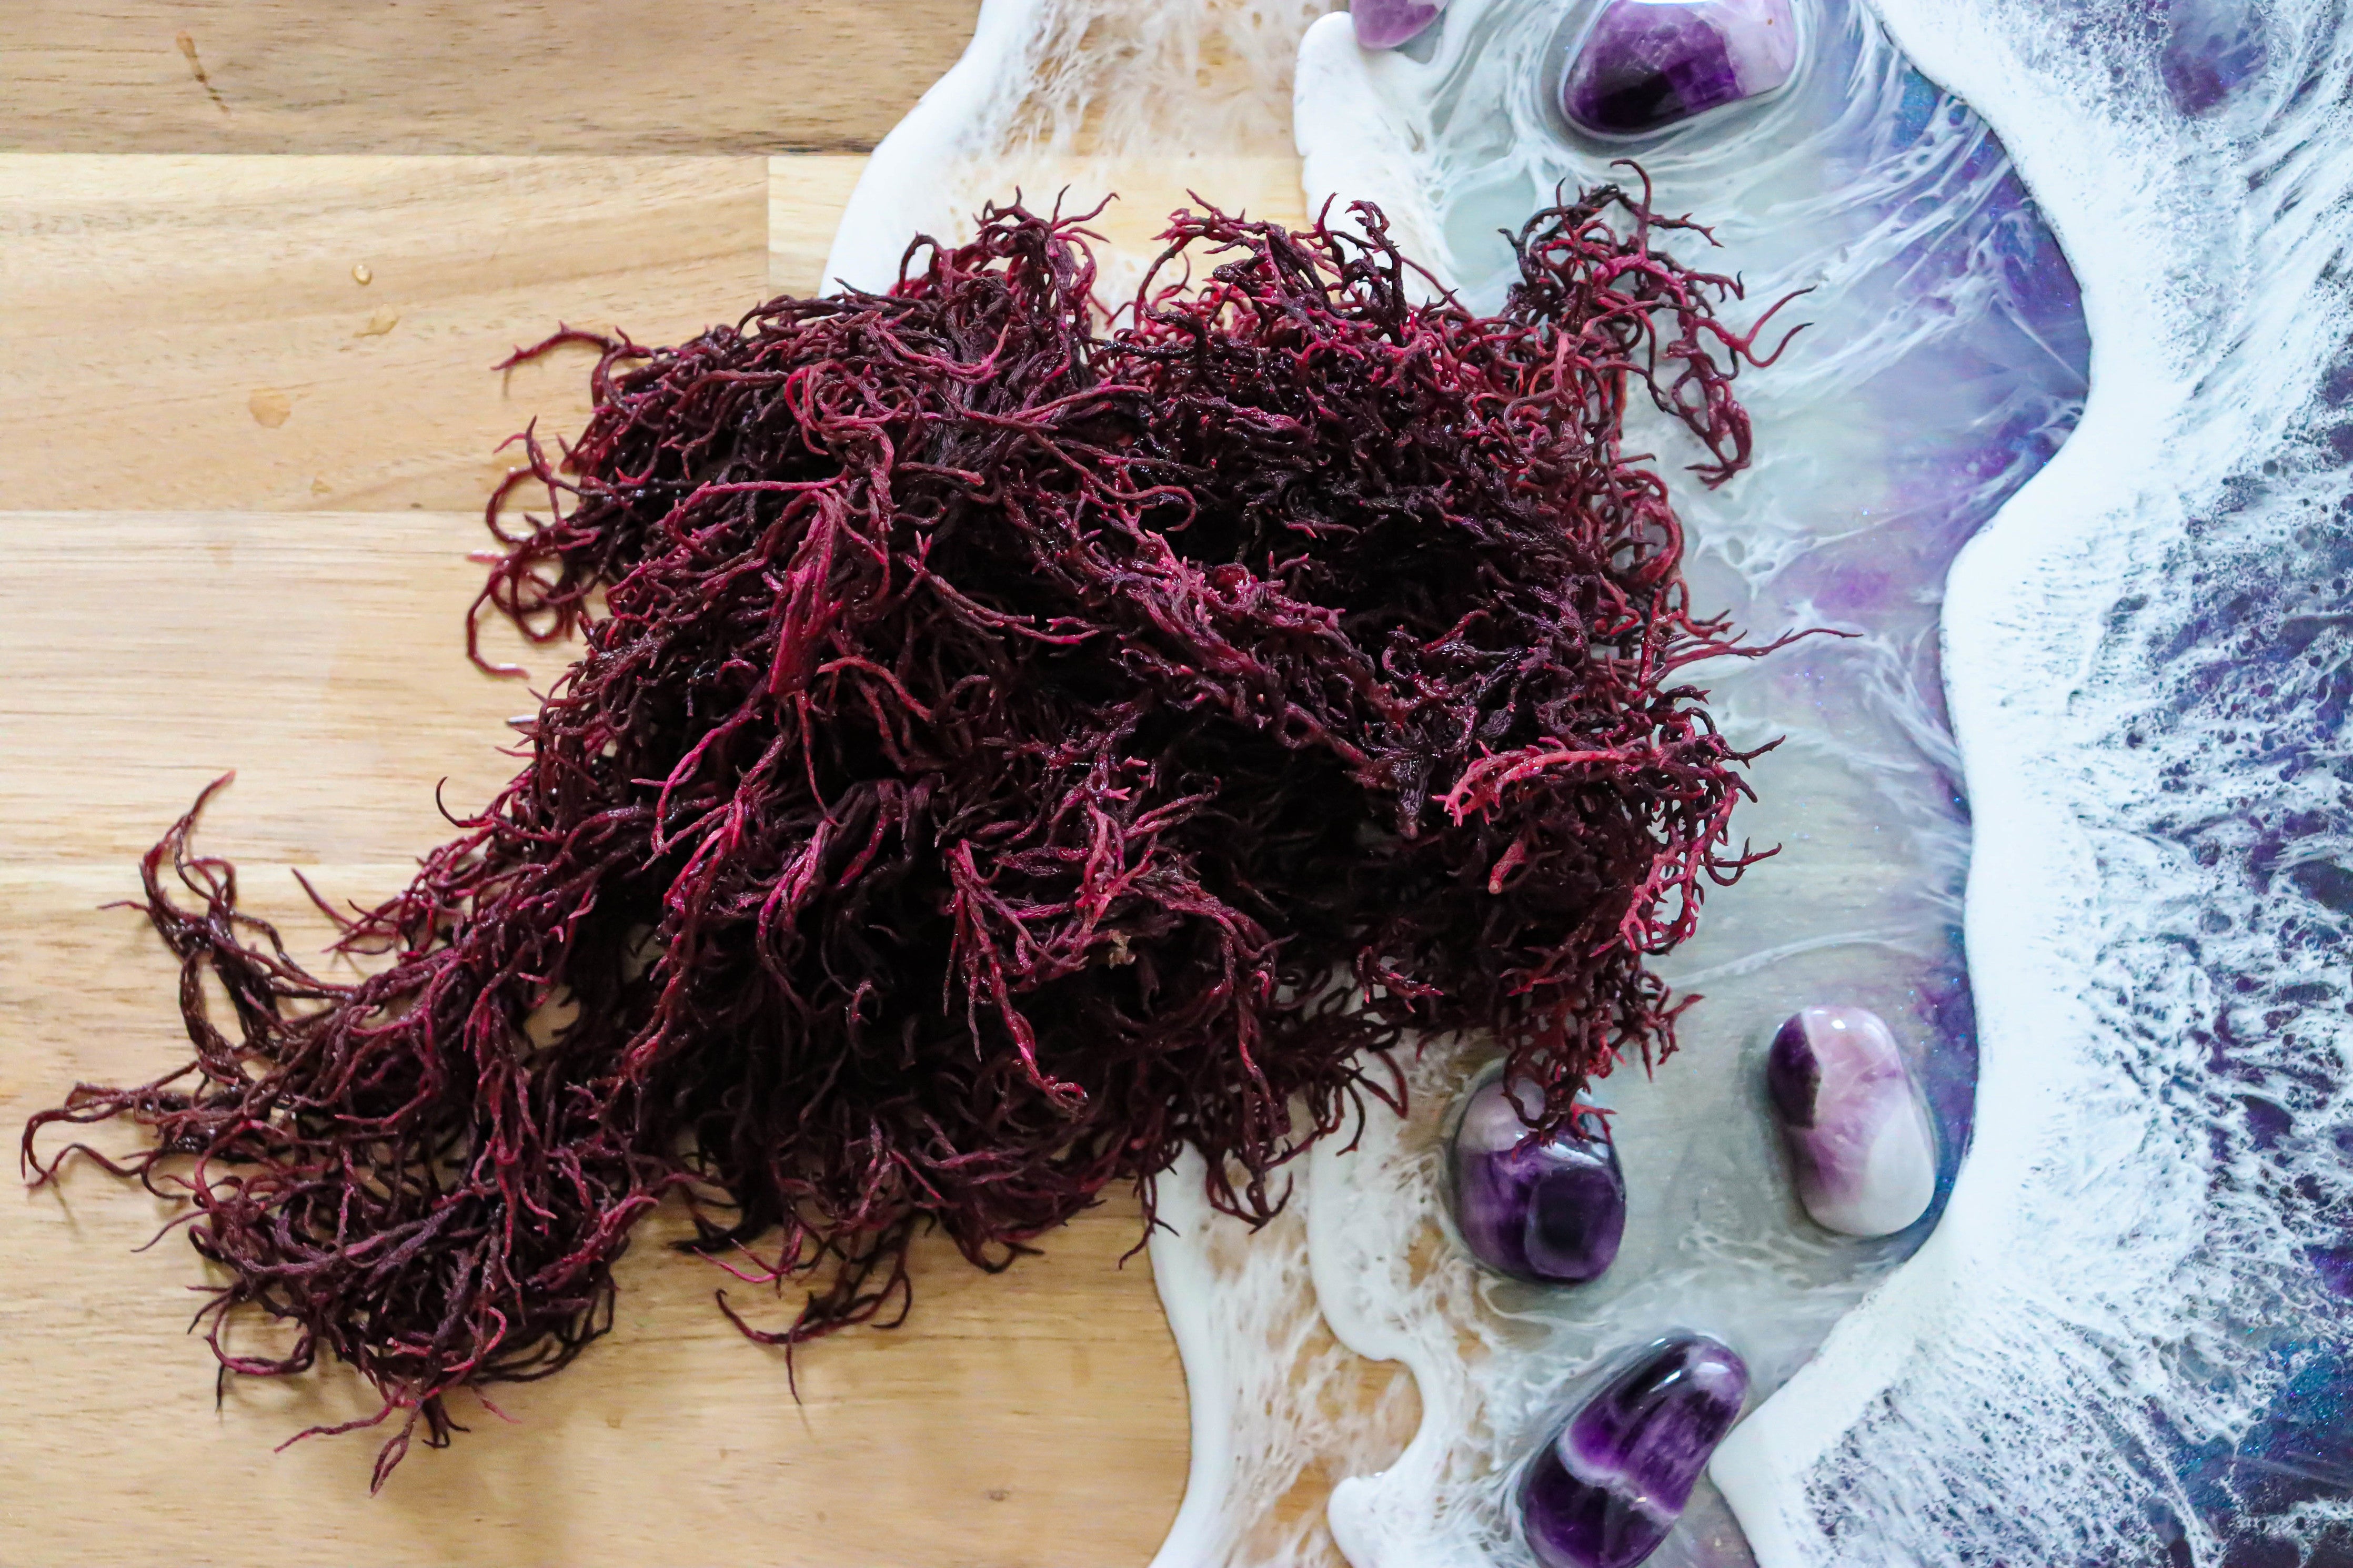 1kg Purple St Lucia Sea Moss - Gracilaria - St Lucia Sea Moss Organic Buy UK 